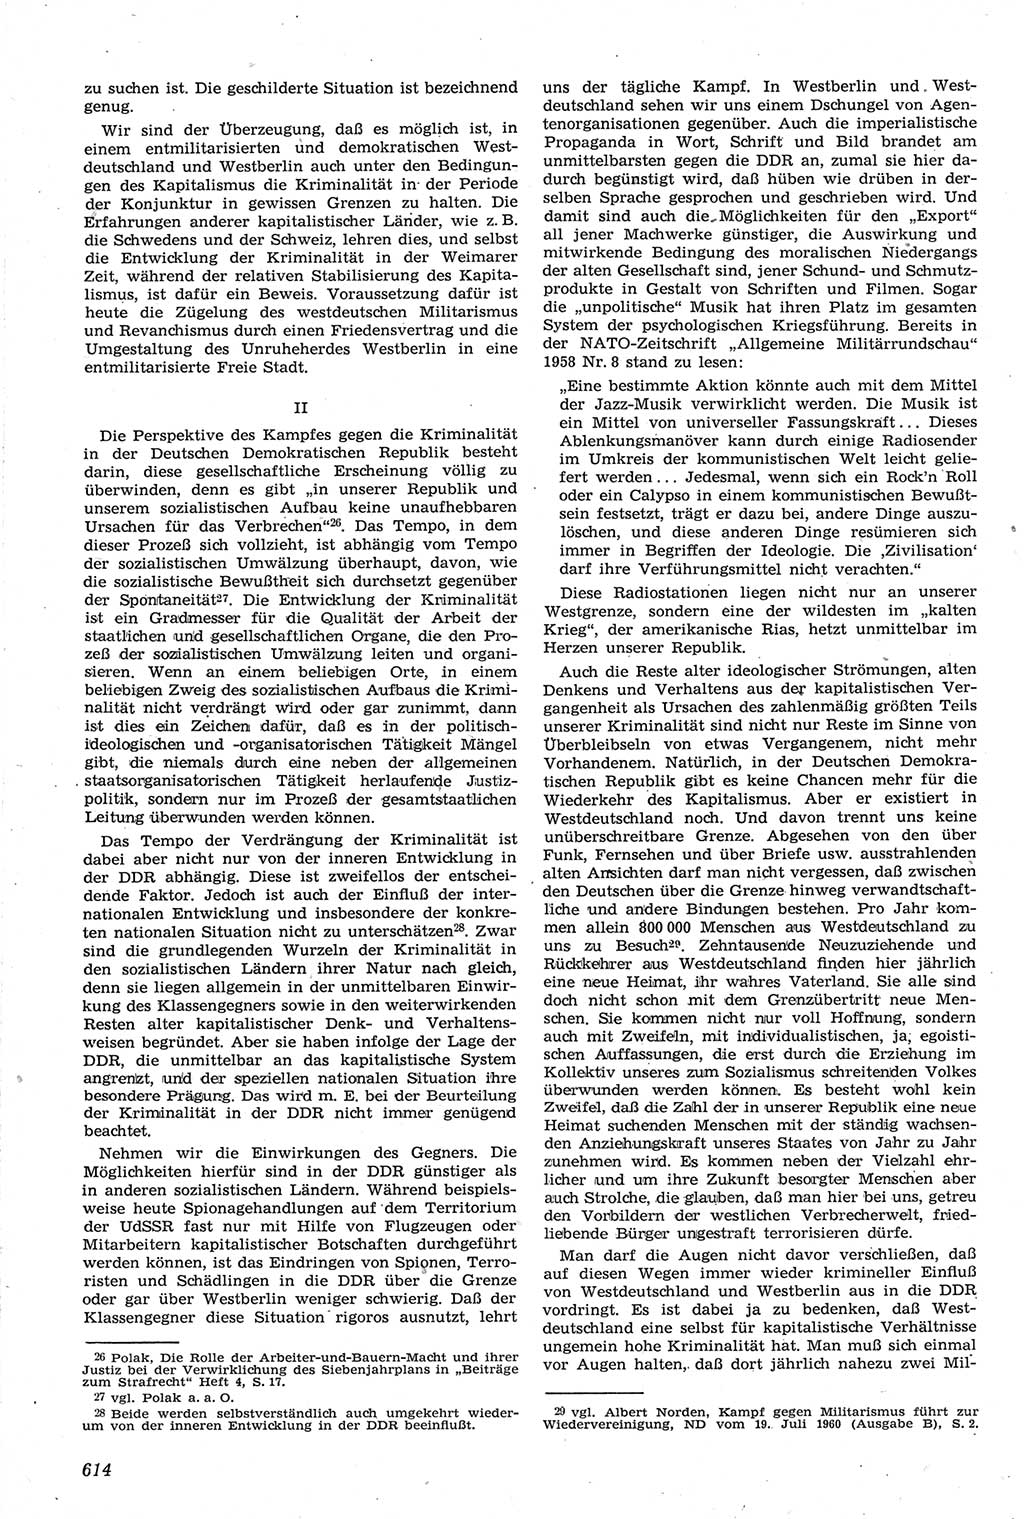 Neue Justiz (NJ), Zeitschrift für Recht und Rechtswissenschaft [Deutsche Demokratische Republik (DDR)], 14. Jahrgang 1960, Seite 614 (NJ DDR 1960, S. 614)